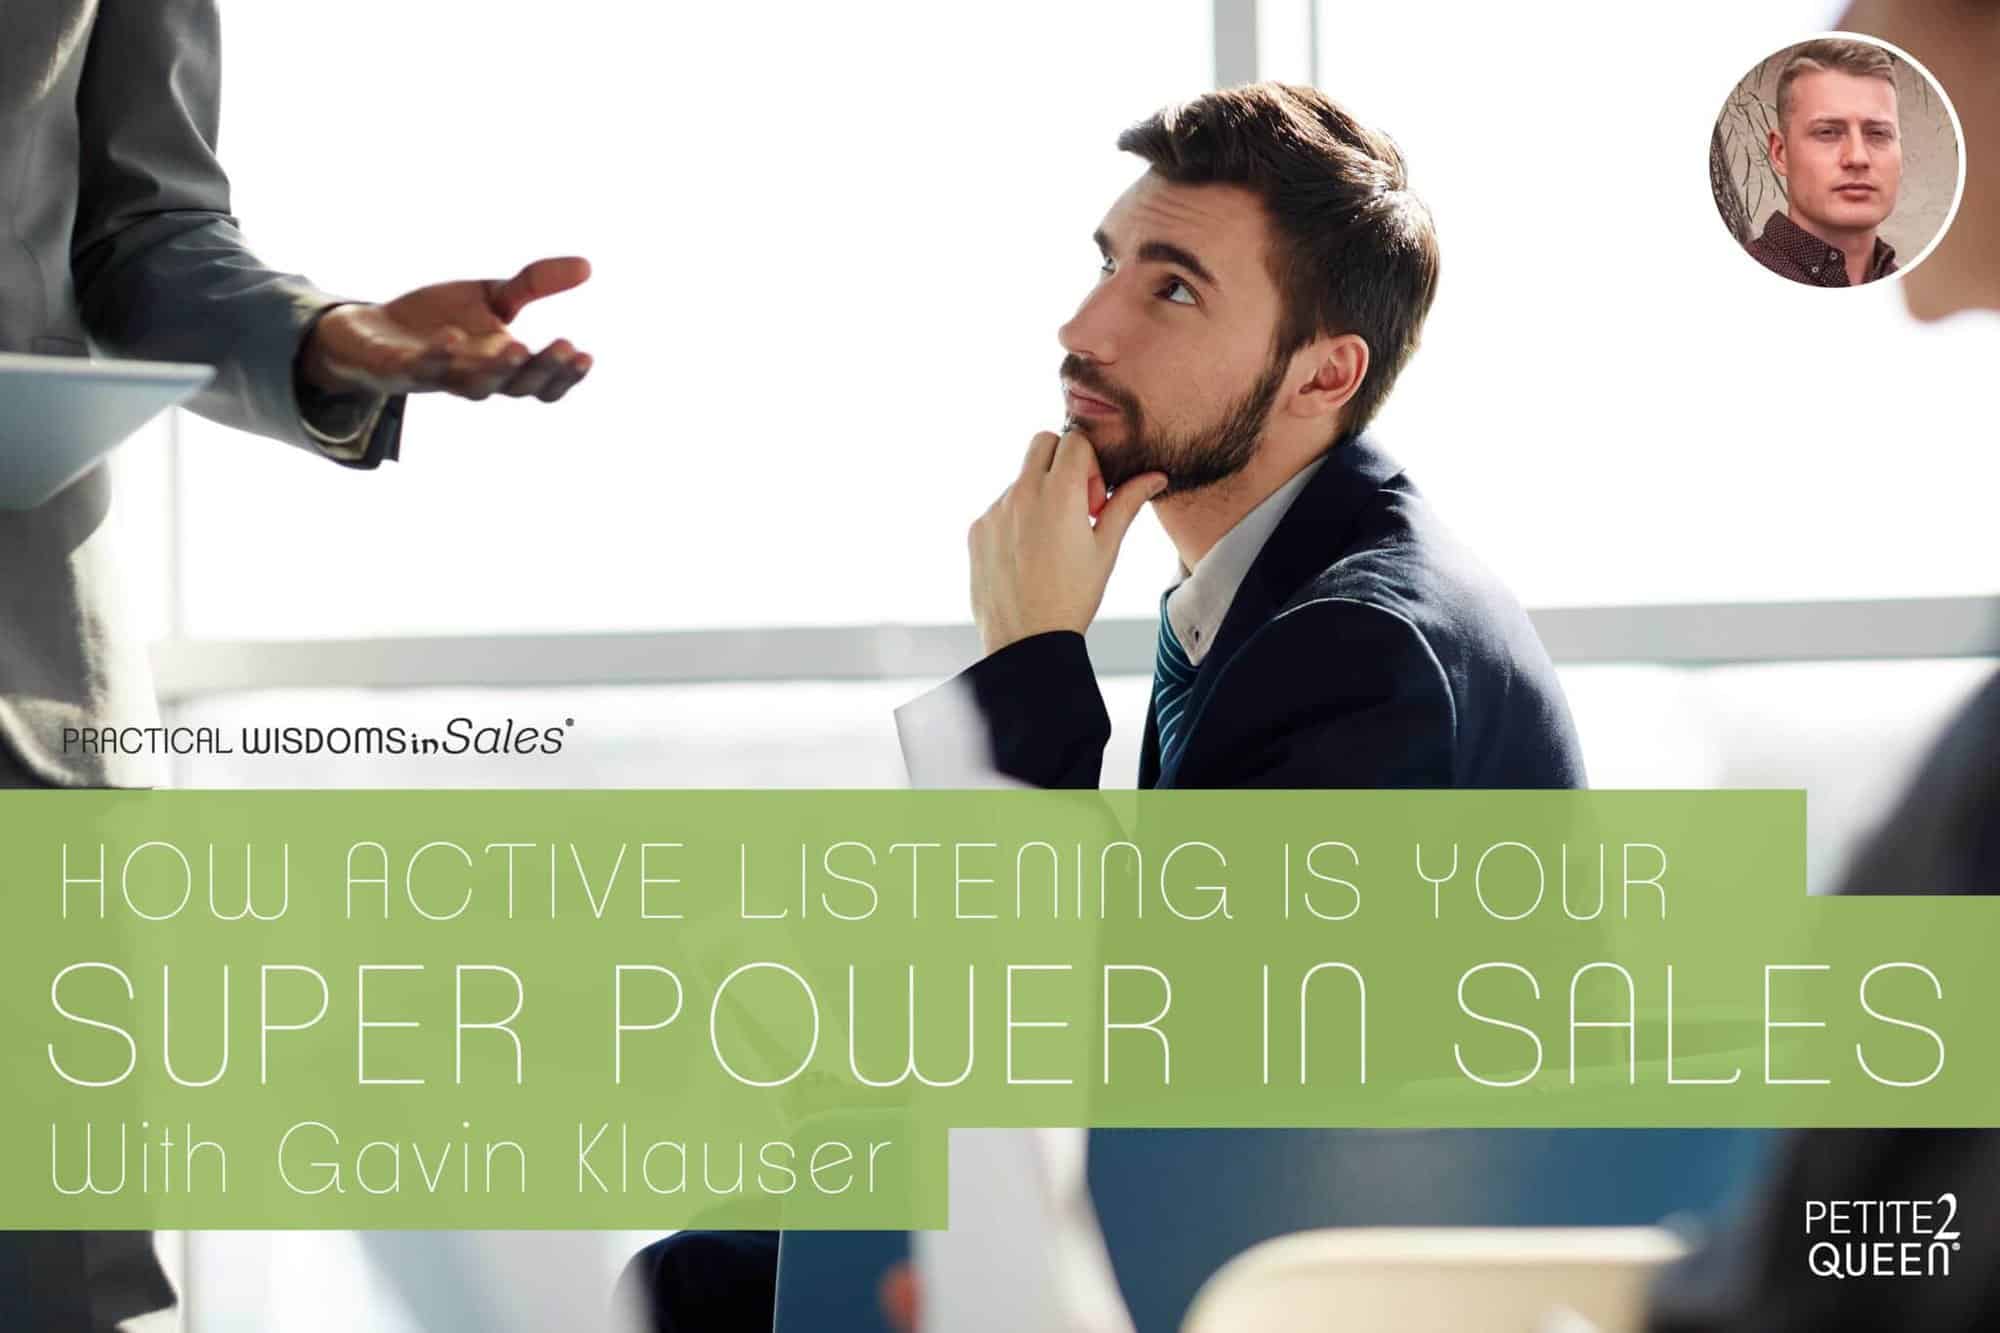 How Active Listening is Your Super Power in Sales - Gavin Klauser